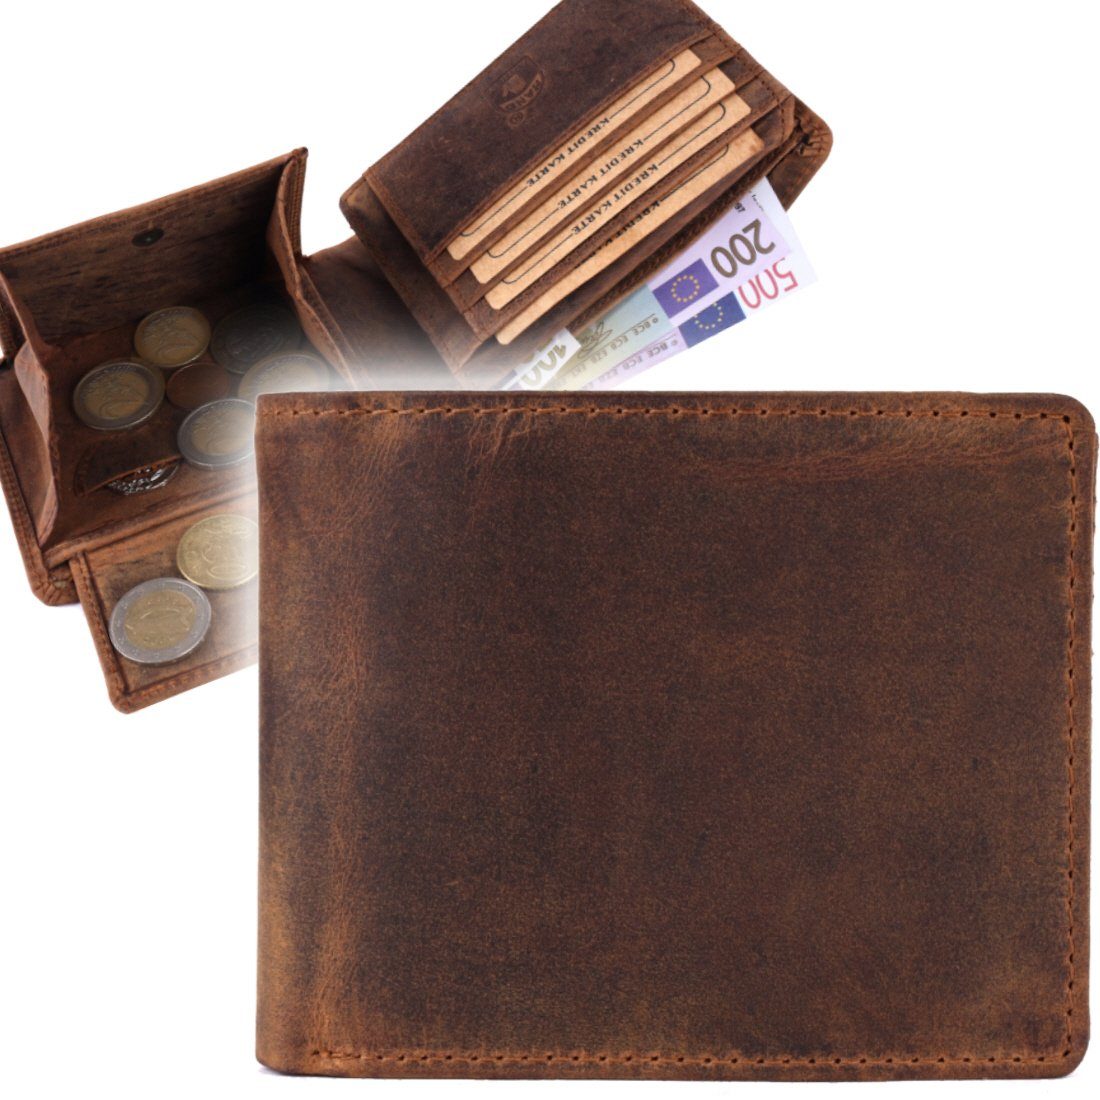 SHG Geldbörse Herren Leder Börse Portemonnaie, Brieftasche Lederbörse mit Münzfach RFID Schutz Männerbörse Büffelleder